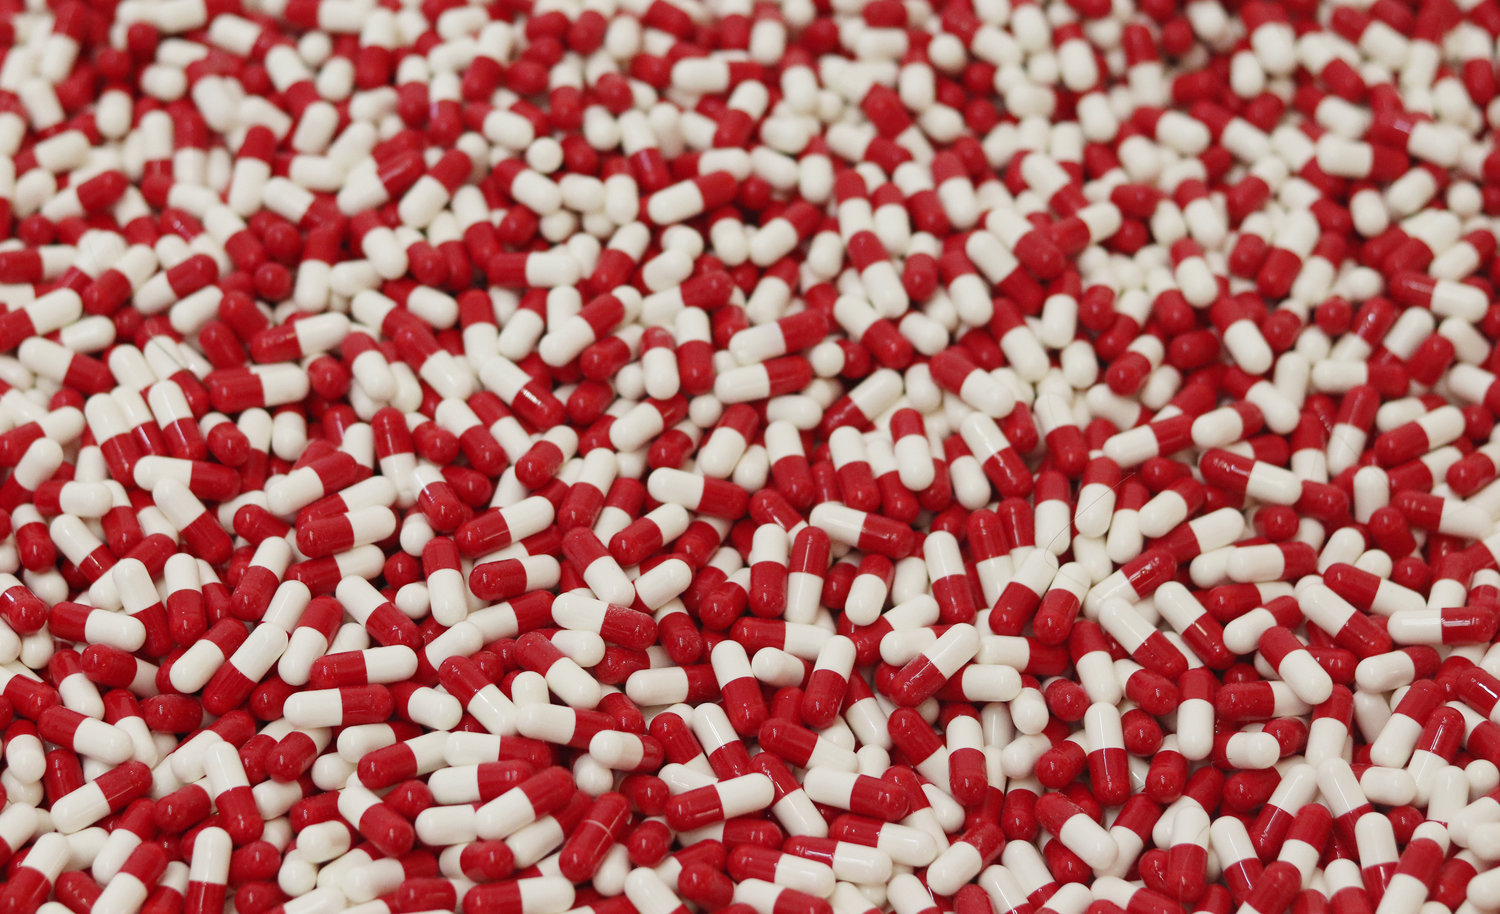 Controverse sur le prix des médicaments aux États-Unis : 8 choses à savoir avant d’en débattre